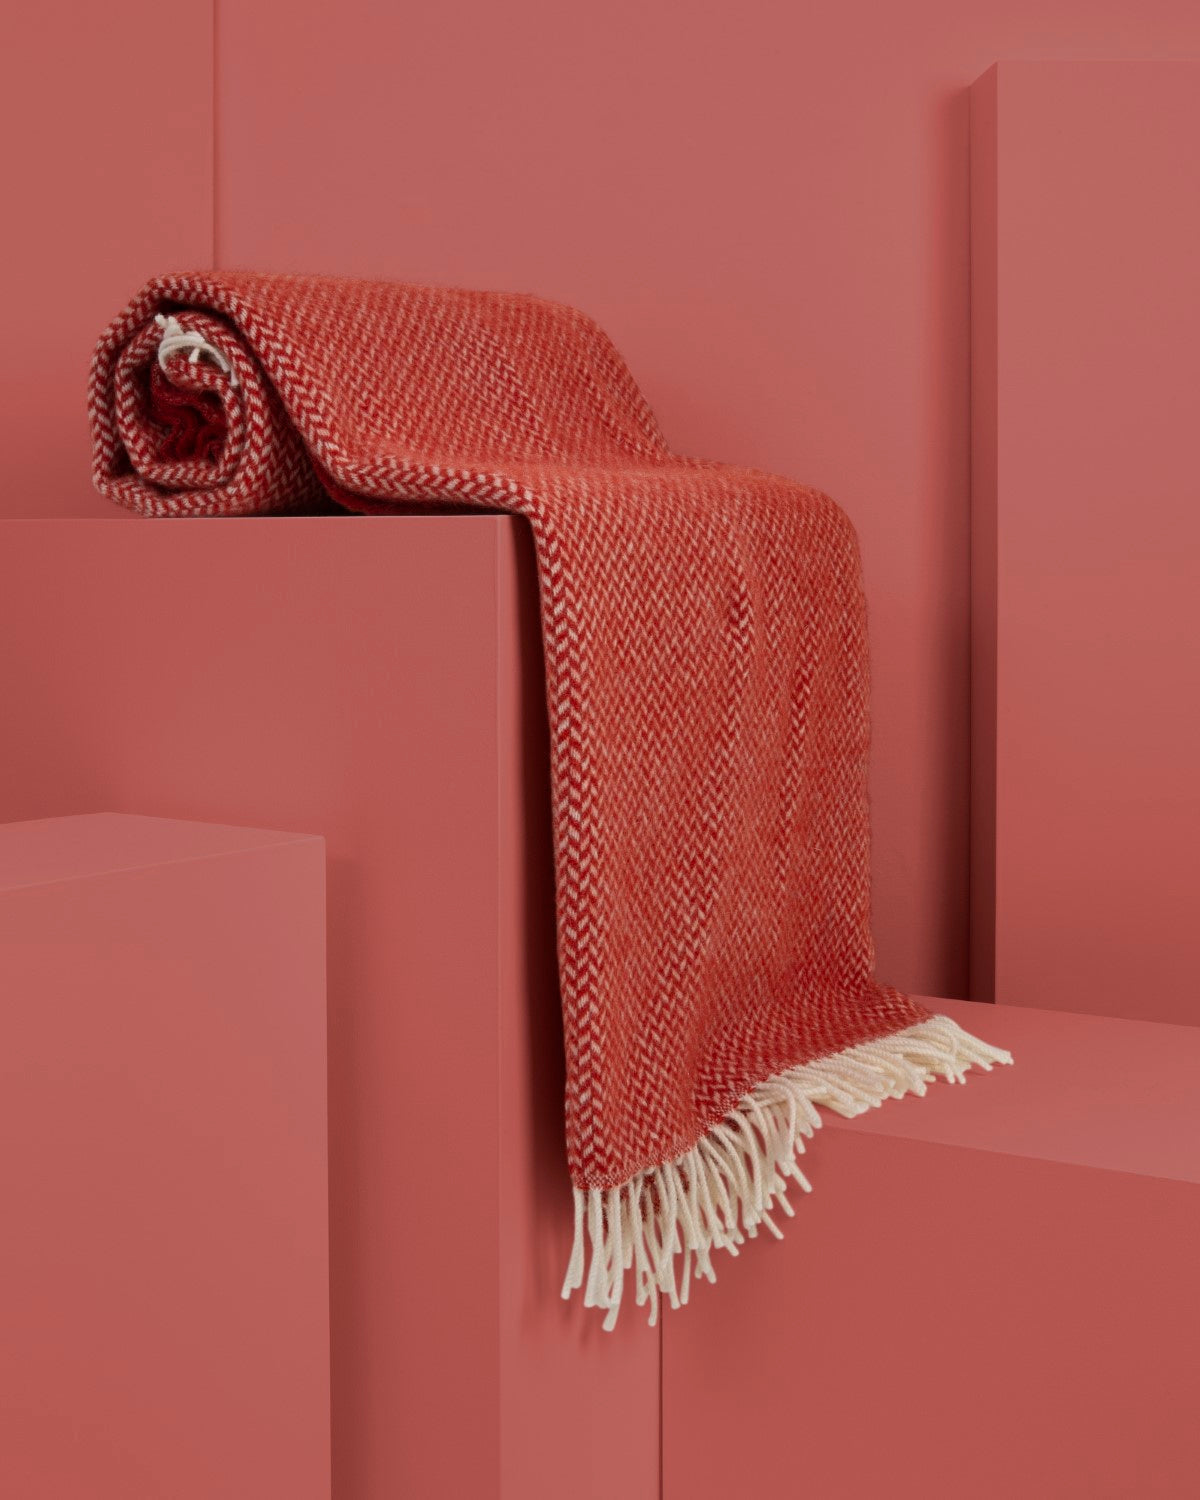 Semi-rolled red herringbone wool blanket draped over display plinths